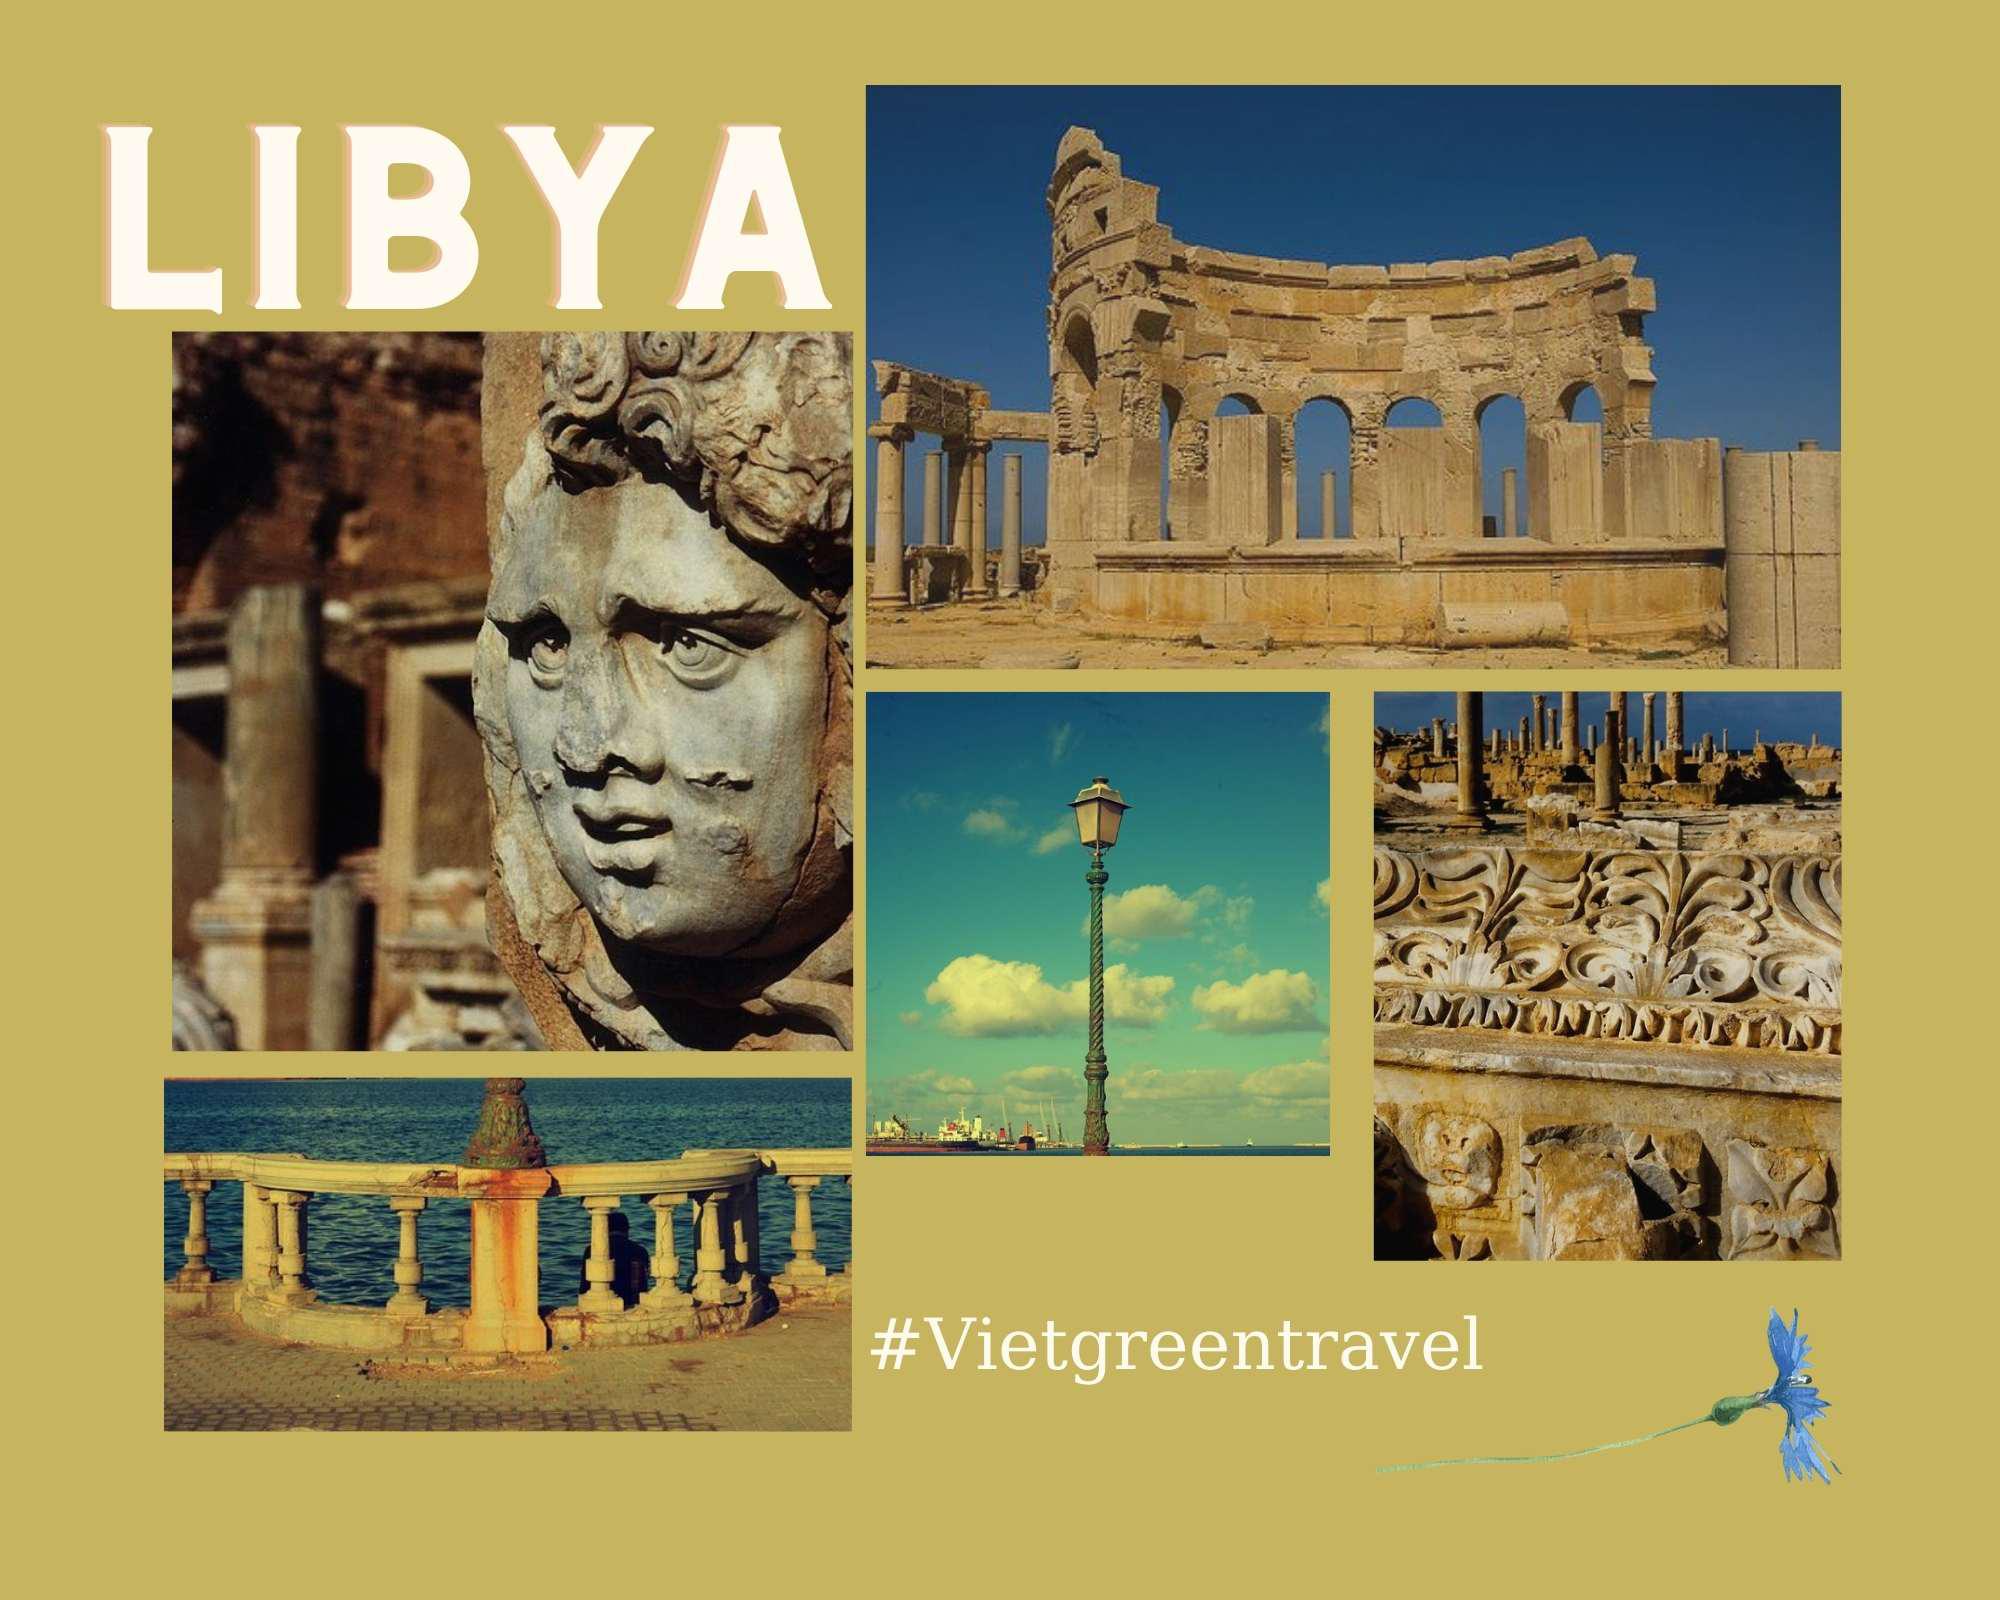 Kinh nghiệm làm visa du lịch Libya bao đậu